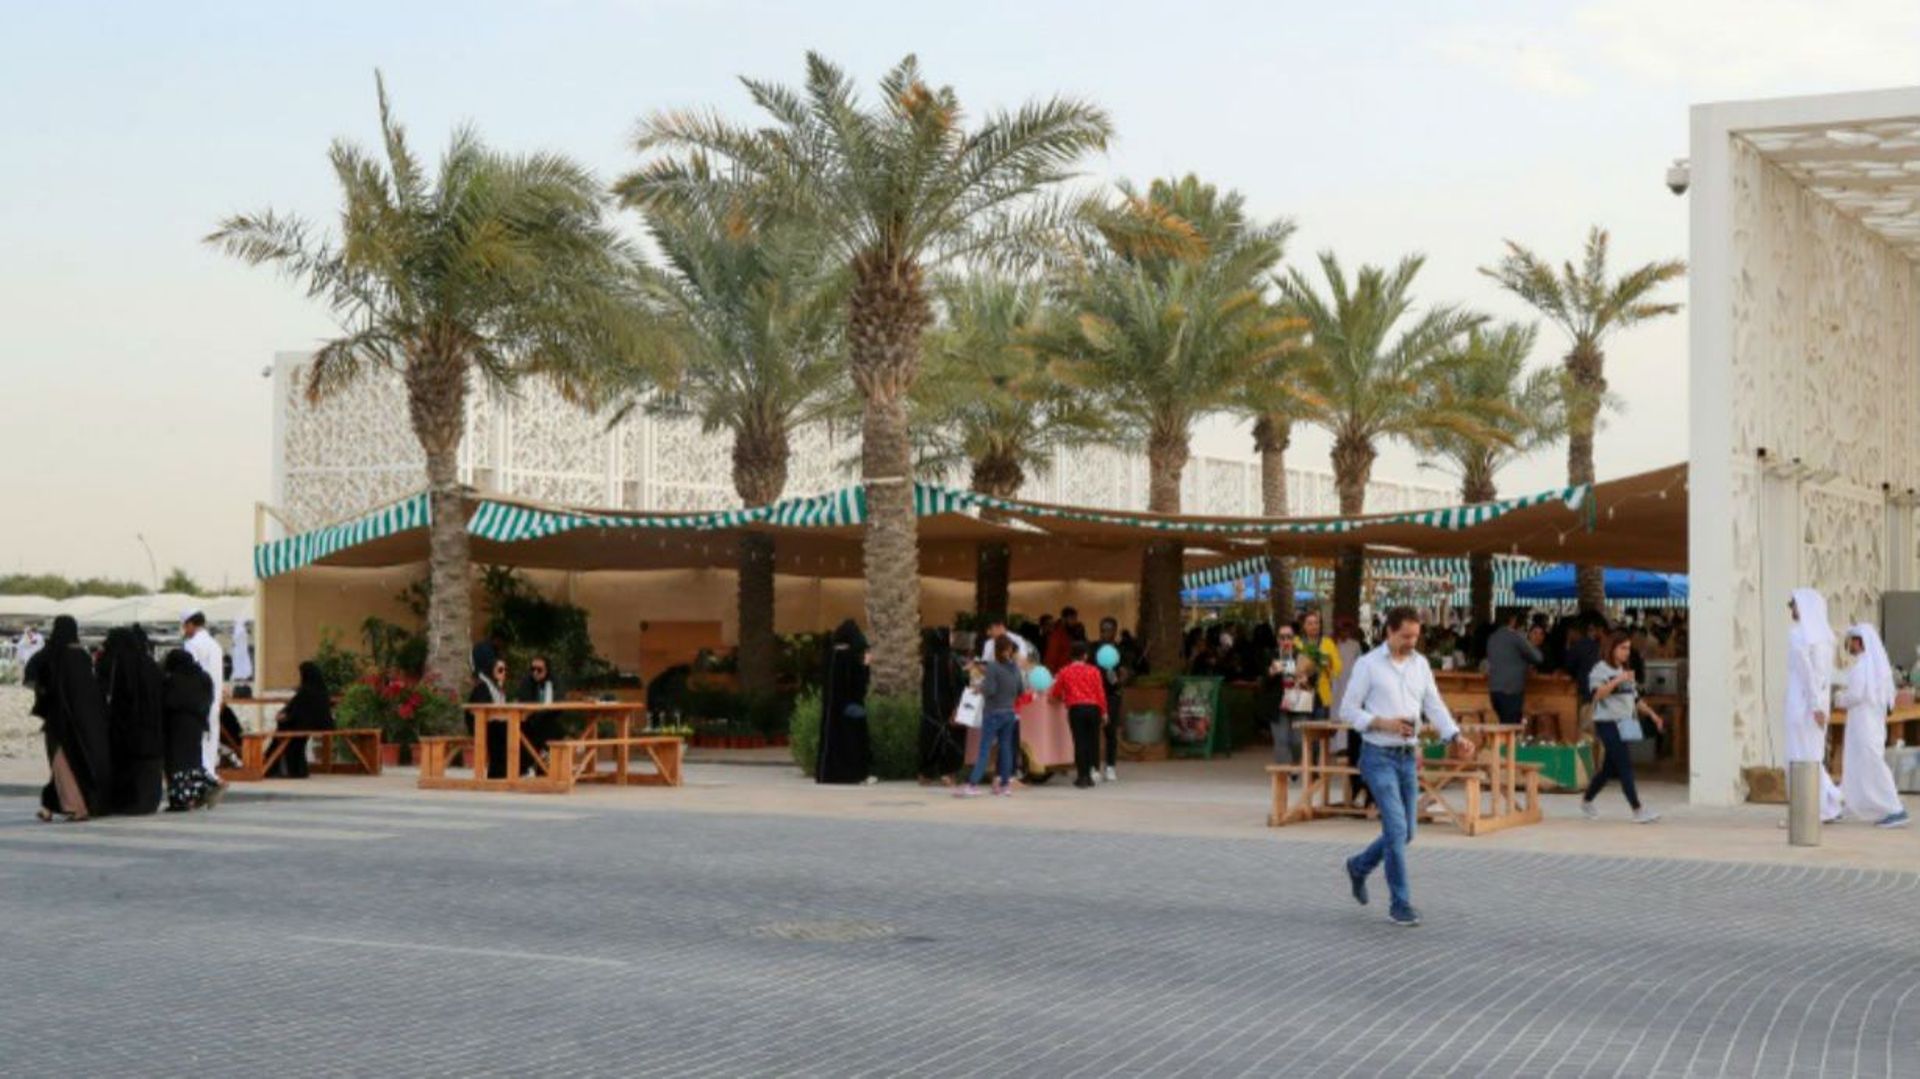 A Doha, un marché veut initier les Qataris à une consommation responsable.